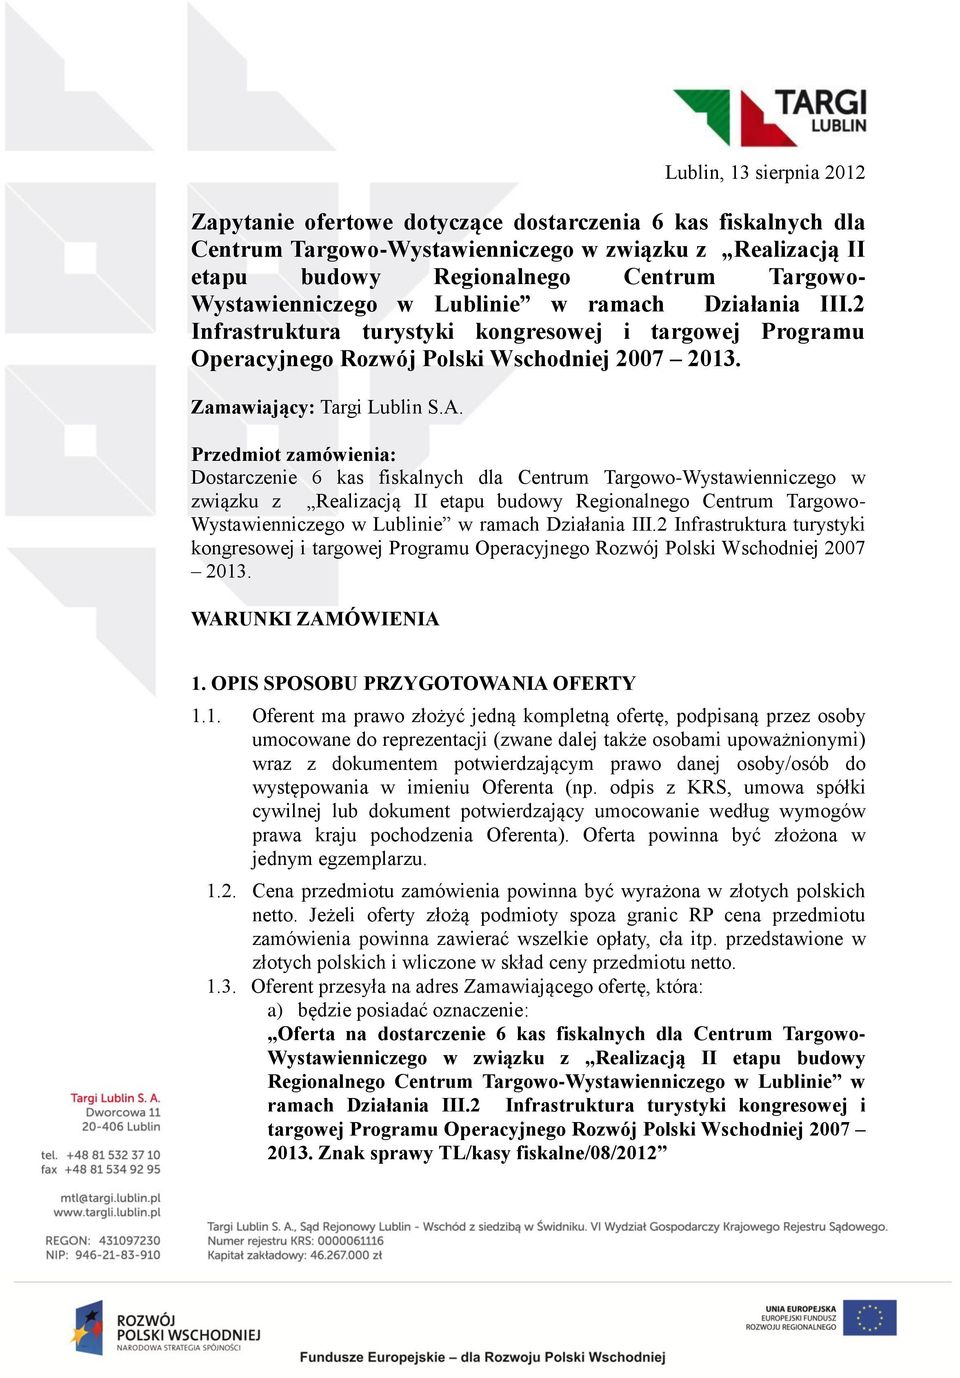 Przedmiot zamówienia: Dostarczenie 6 kas fiskalnych dla Centrum Targowo-Wystawienniczego w związku z Realizacją II etapu budowy Regionalnego Centrum Targowo- Wystawienniczego w Lublinie w ramach